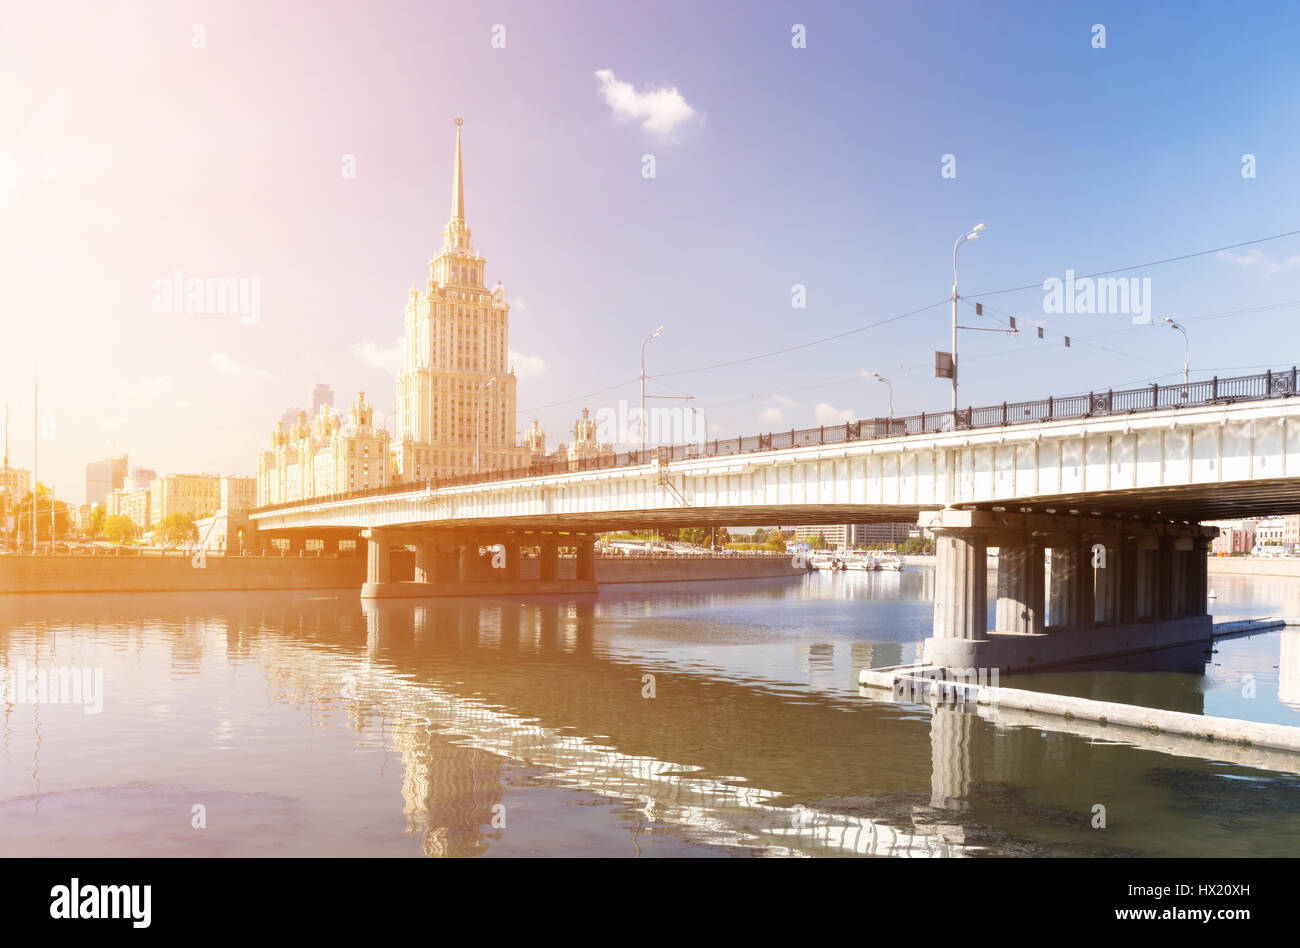 Novoarbatsky Bridge and Hotel Ukraina in Moscow Stock Photo